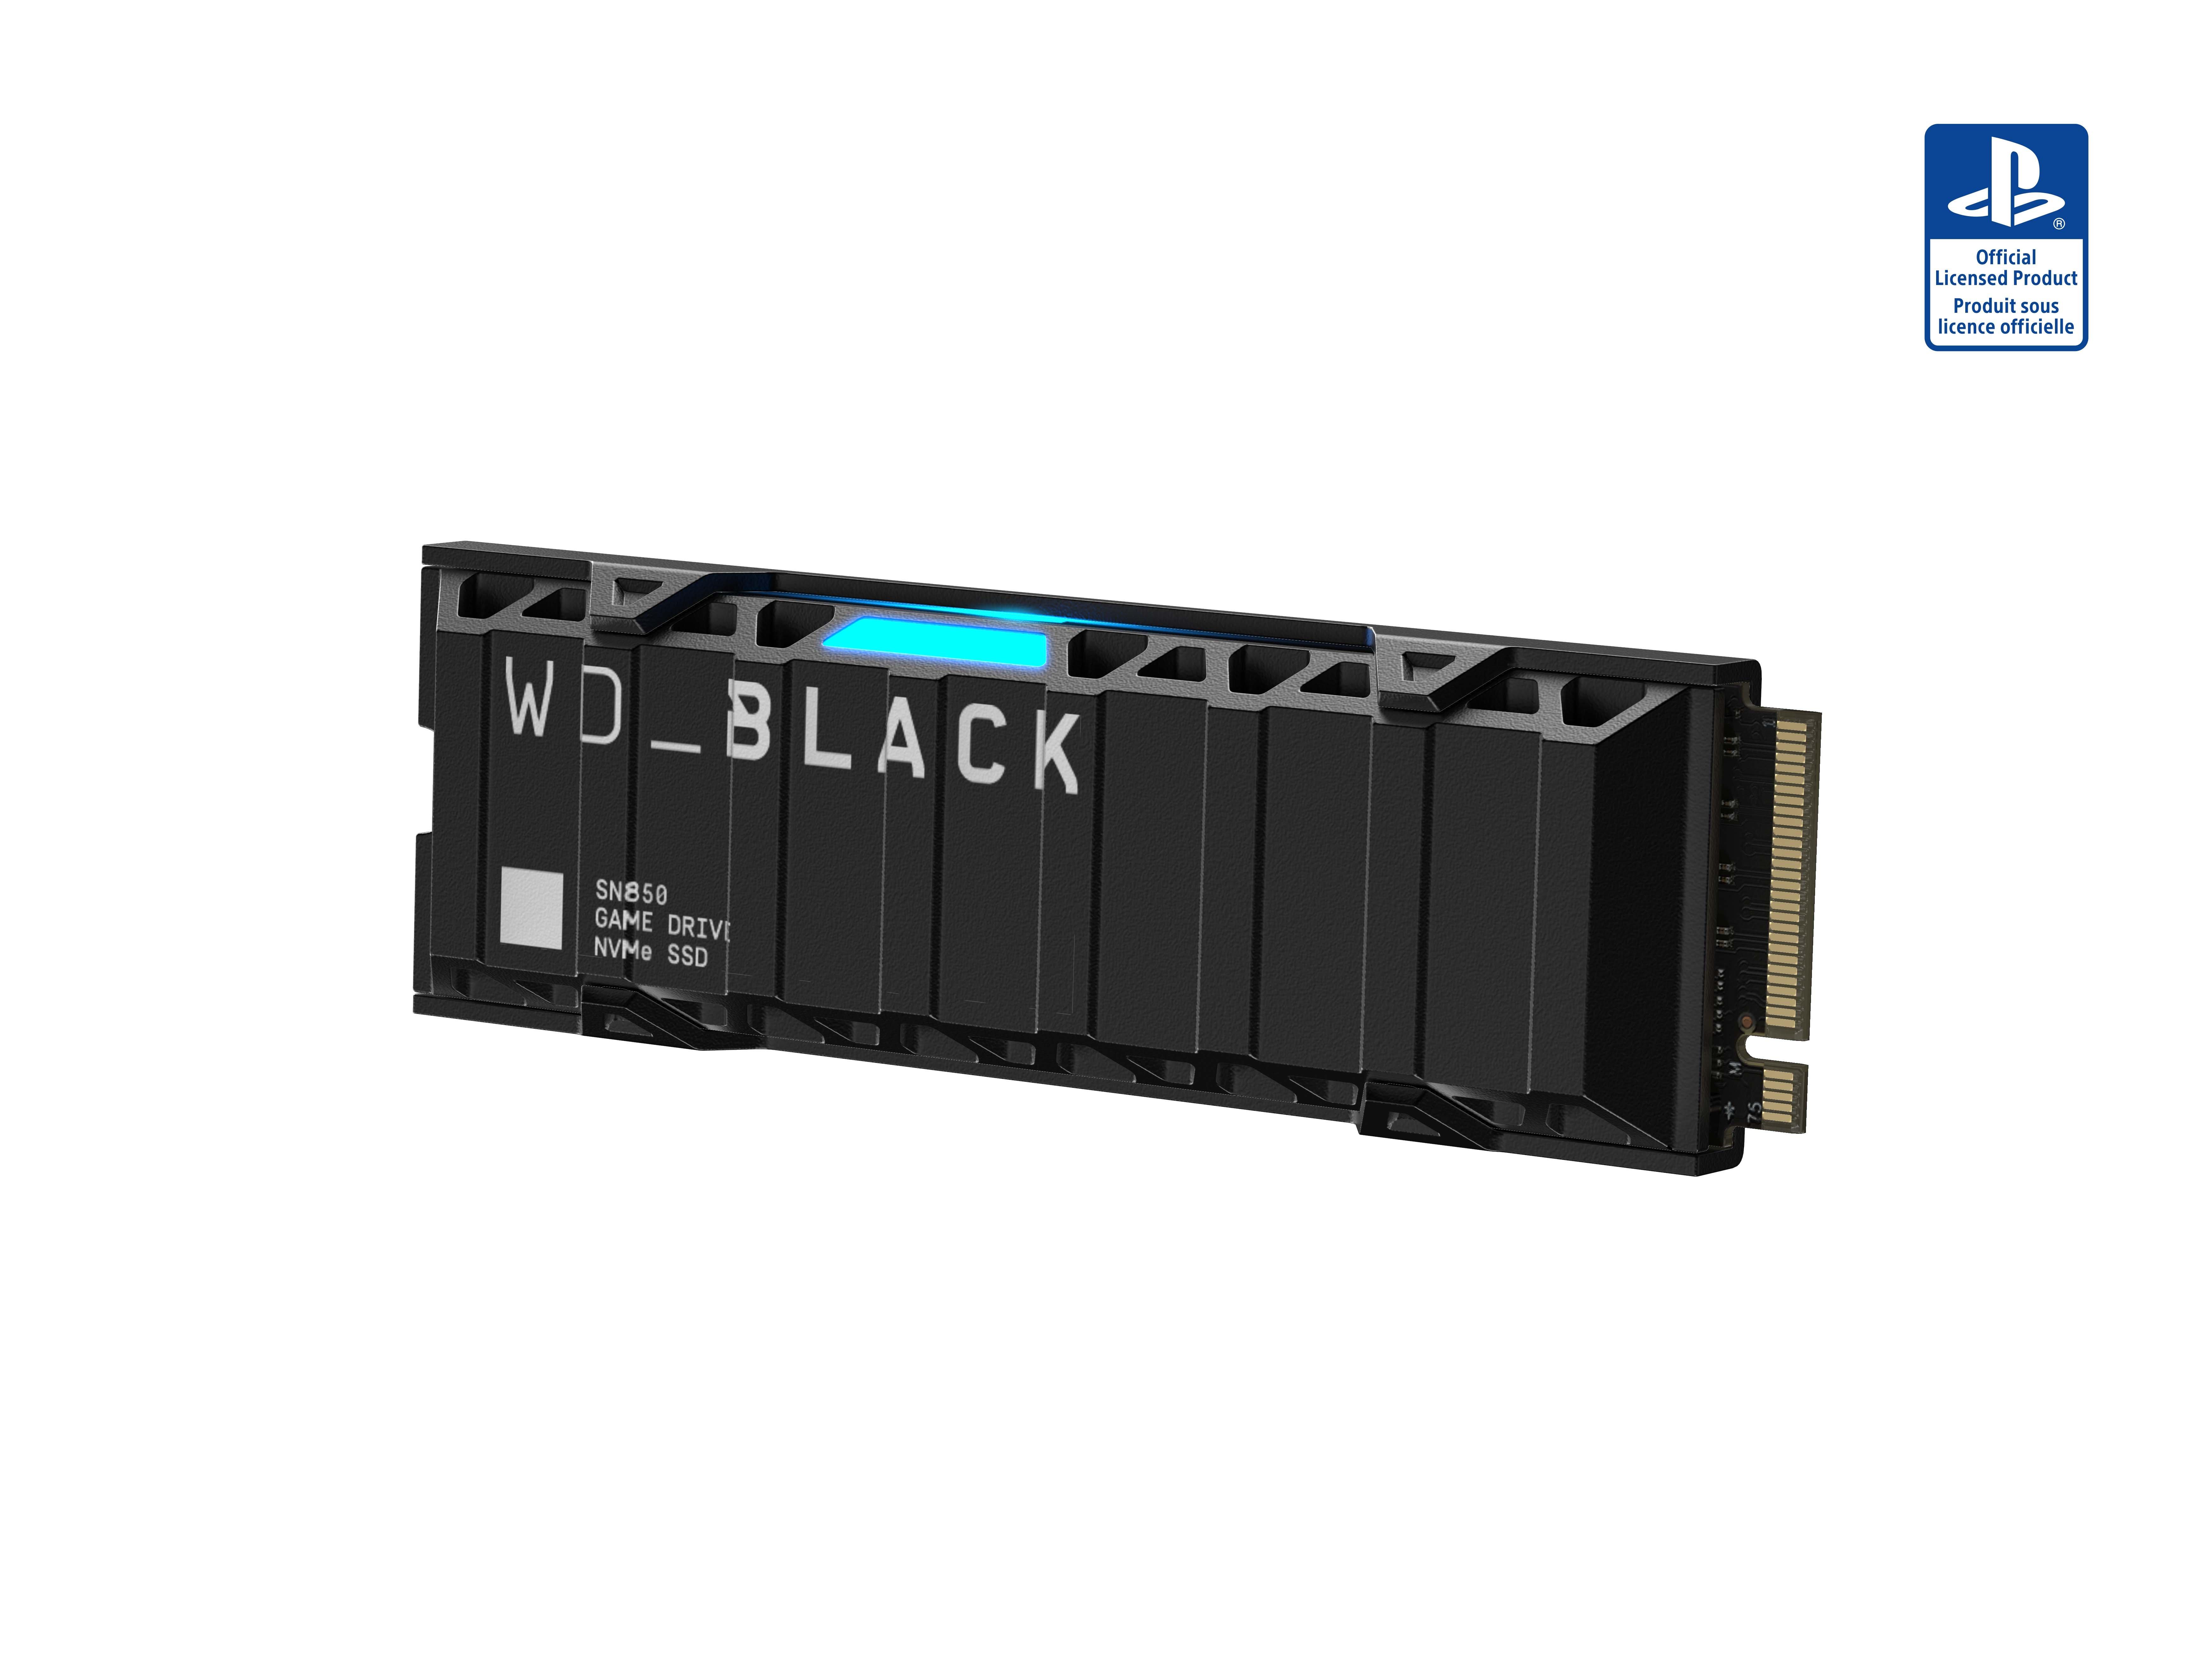 WD_BLACK 1TB SN850 NVMe SSD | GameStop